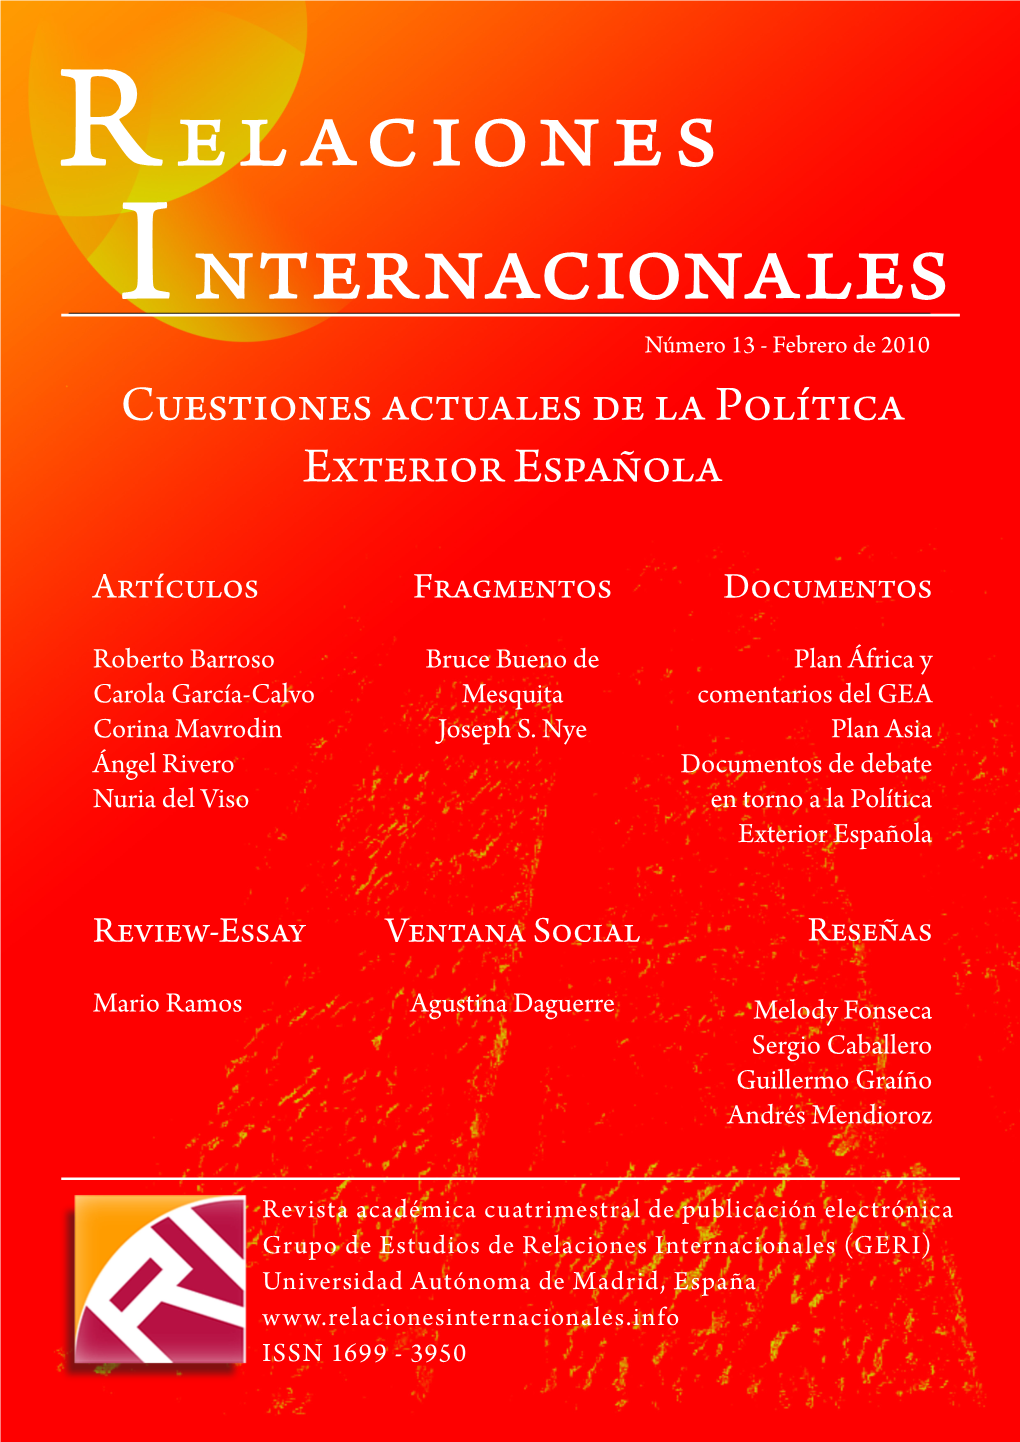 Relaciones Internacionales (GERI) Universidad Autónoma De Madrid, España ISSN 1699 - 3950 R E L a C I O N E S I Nternacionales